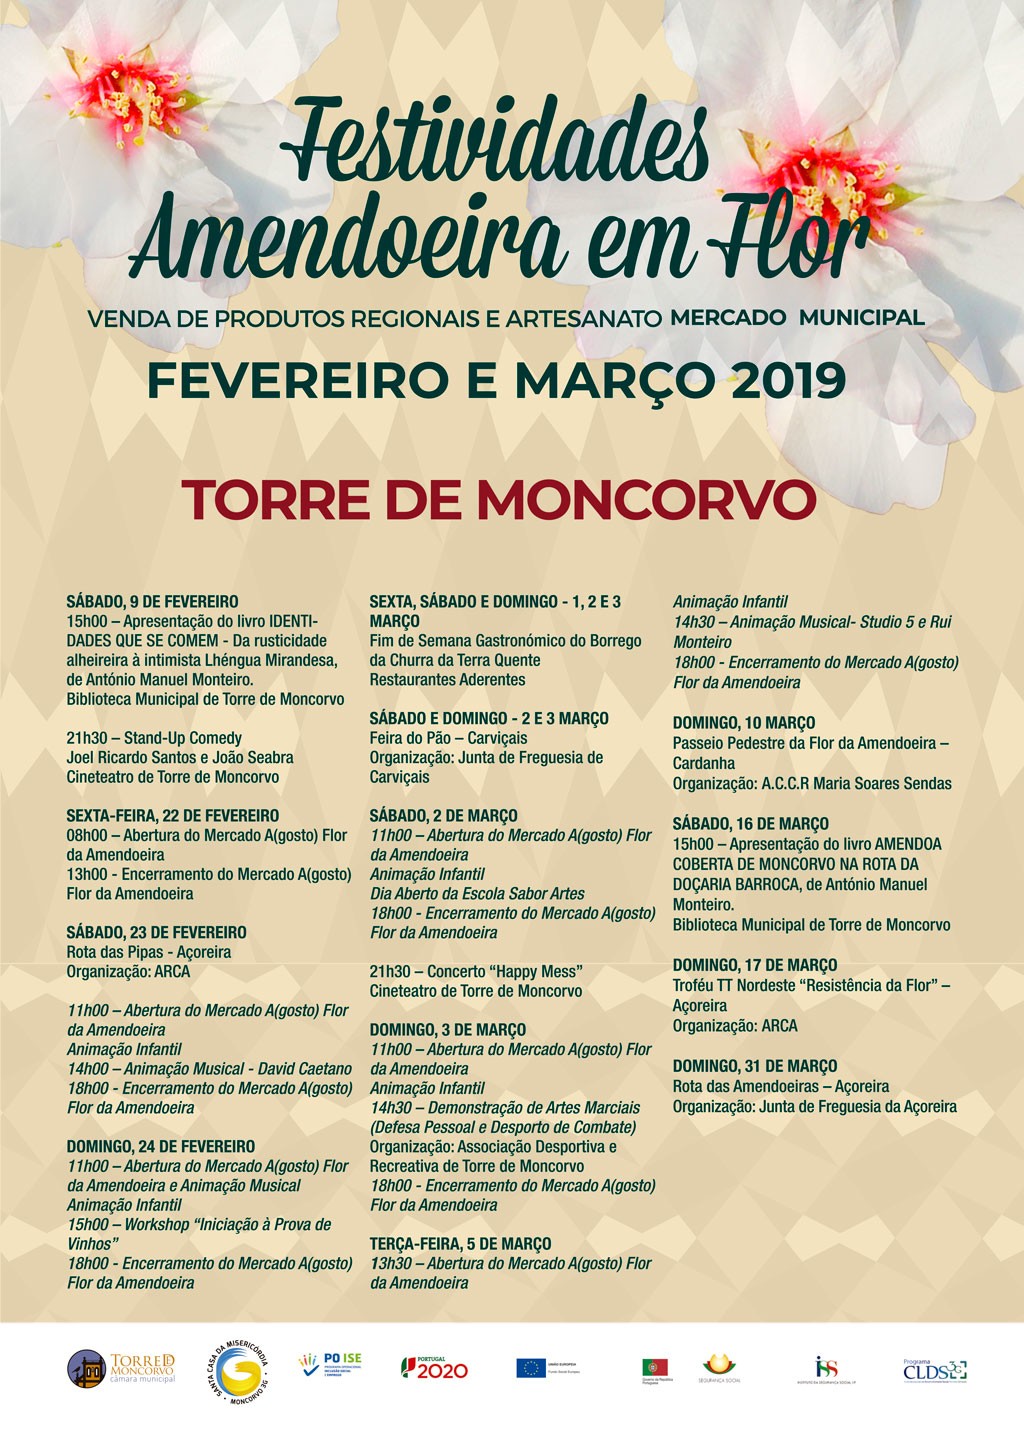 Festividades das Amendoeiras em Flor 2019